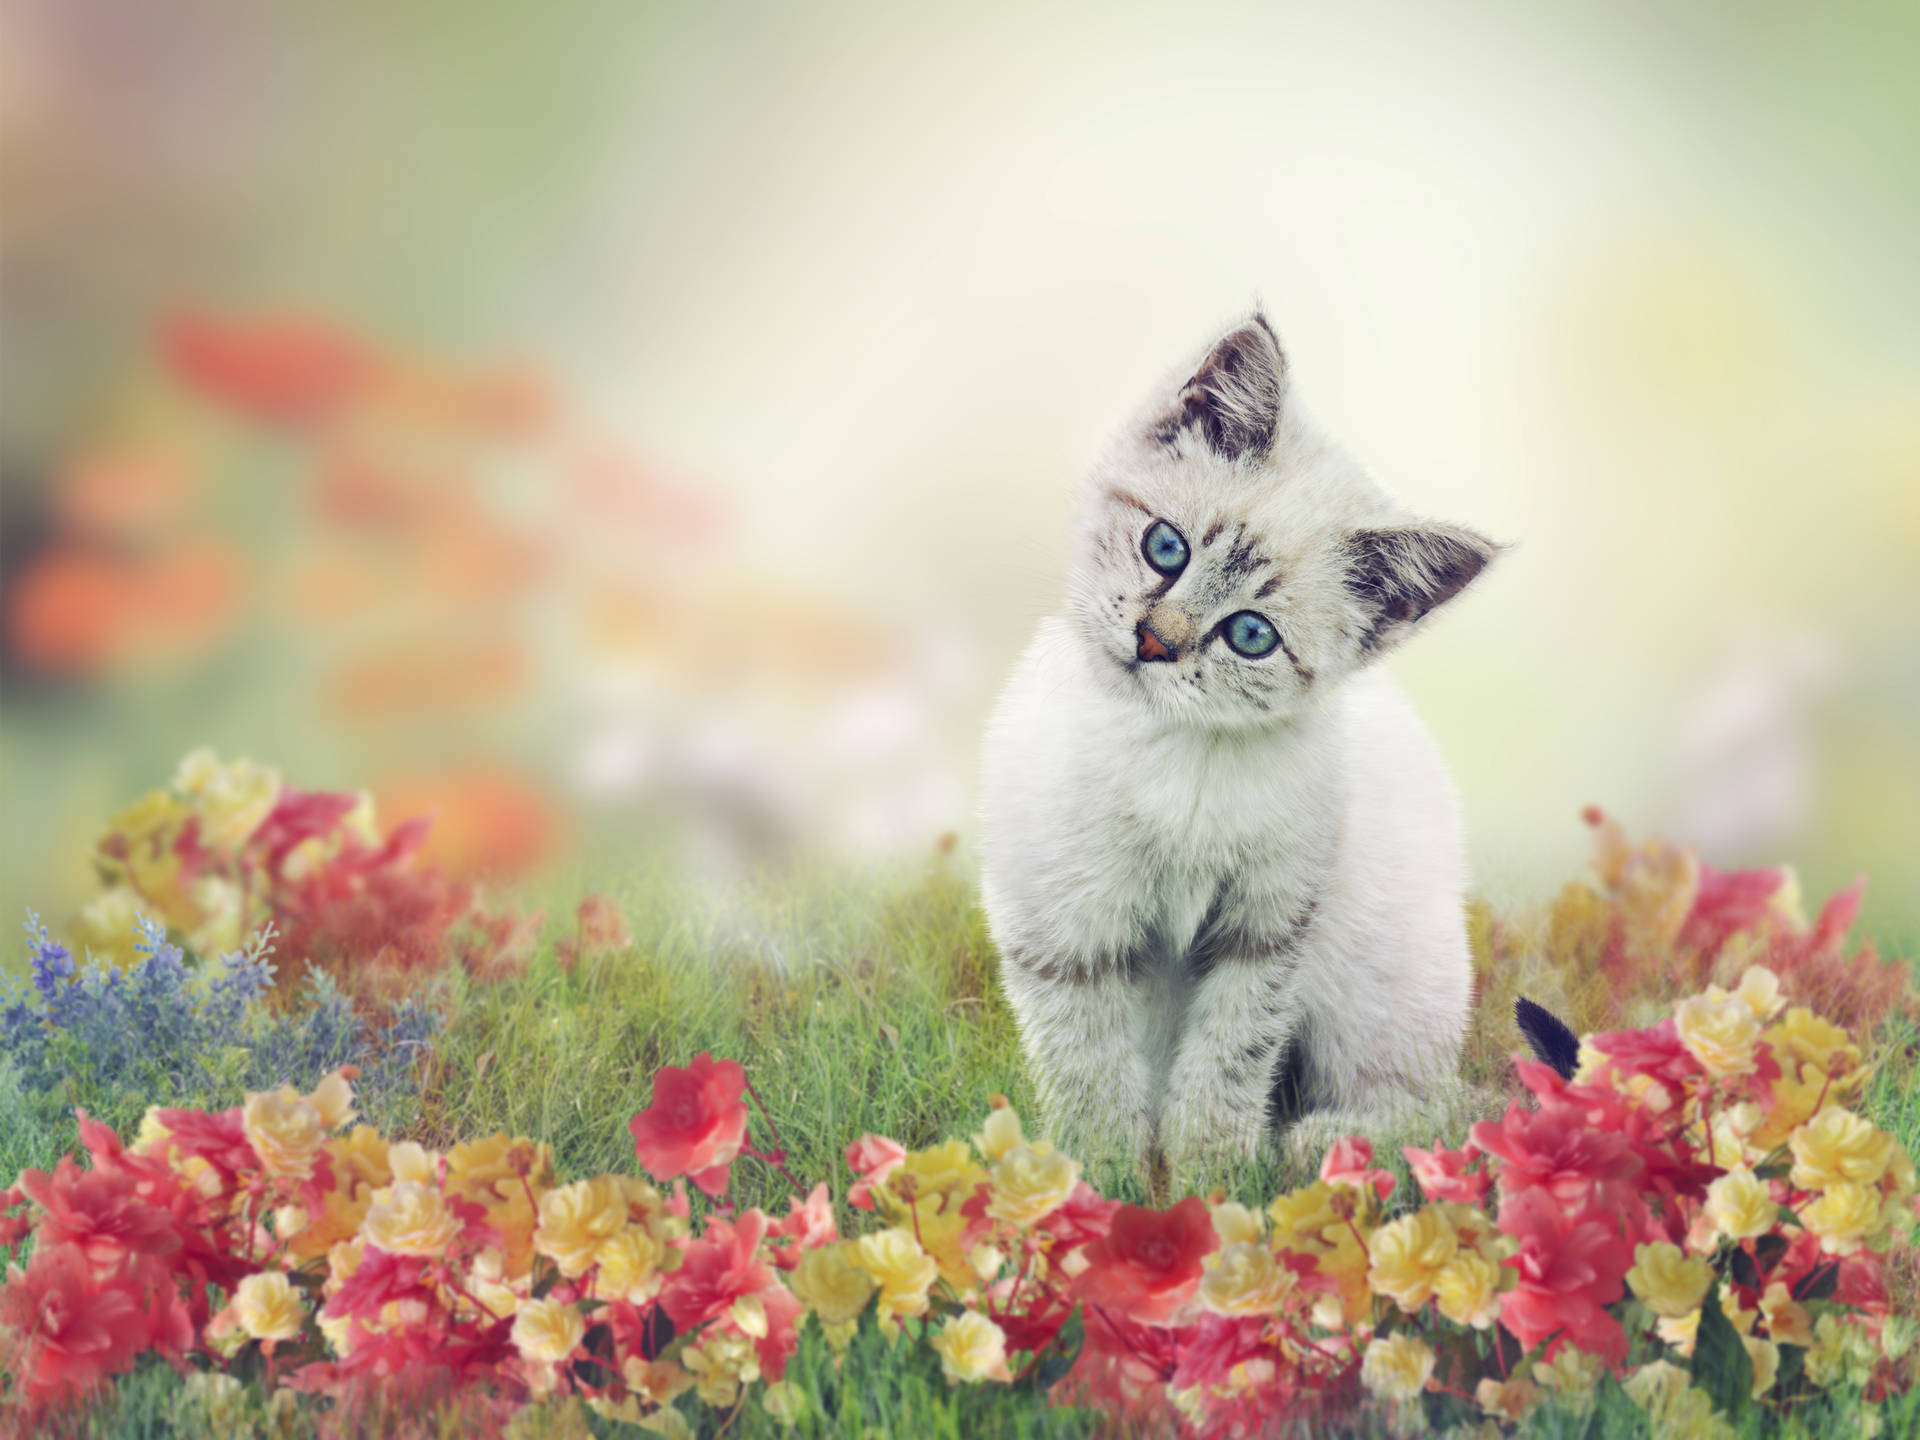 Cute Cat On Flower Field